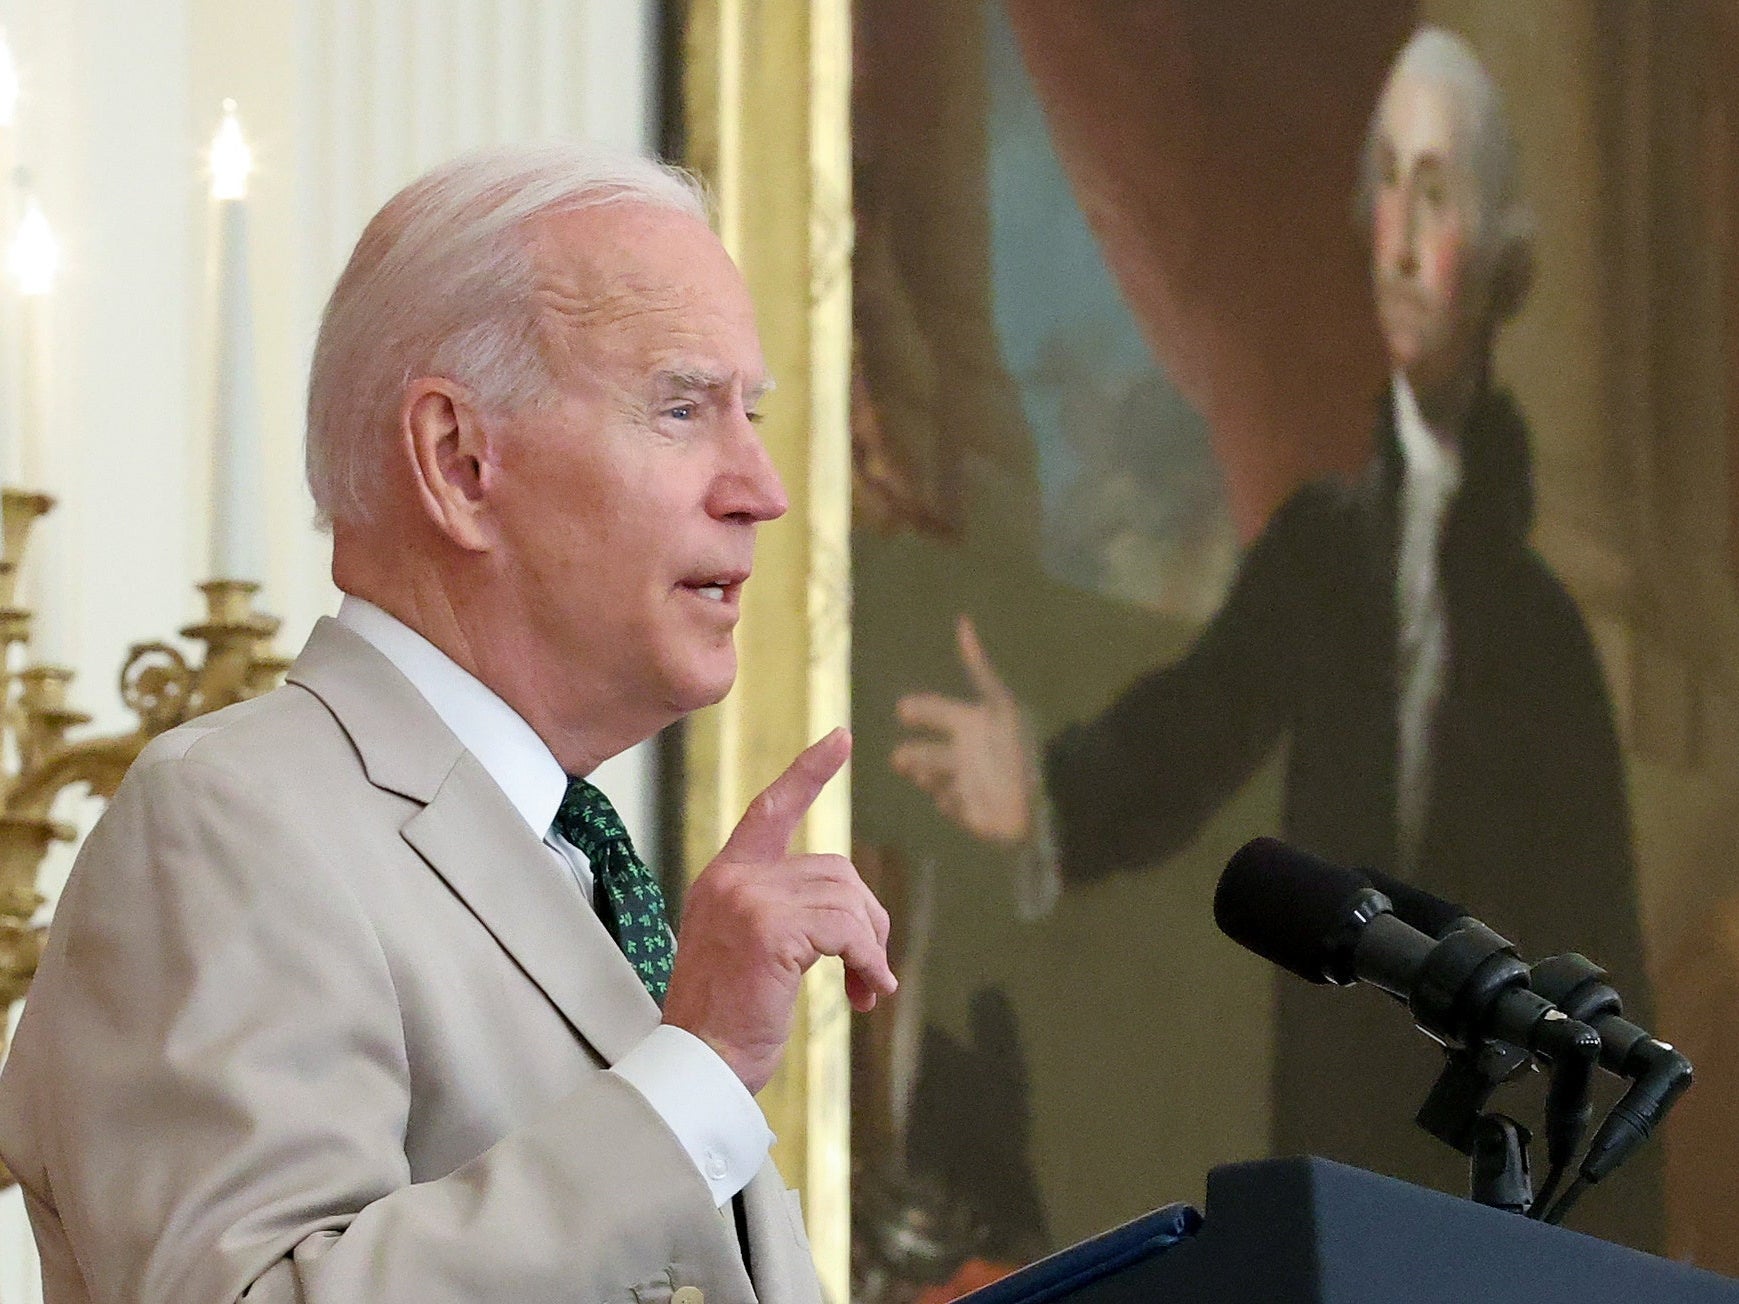 Joe Biden wearing a tan suit